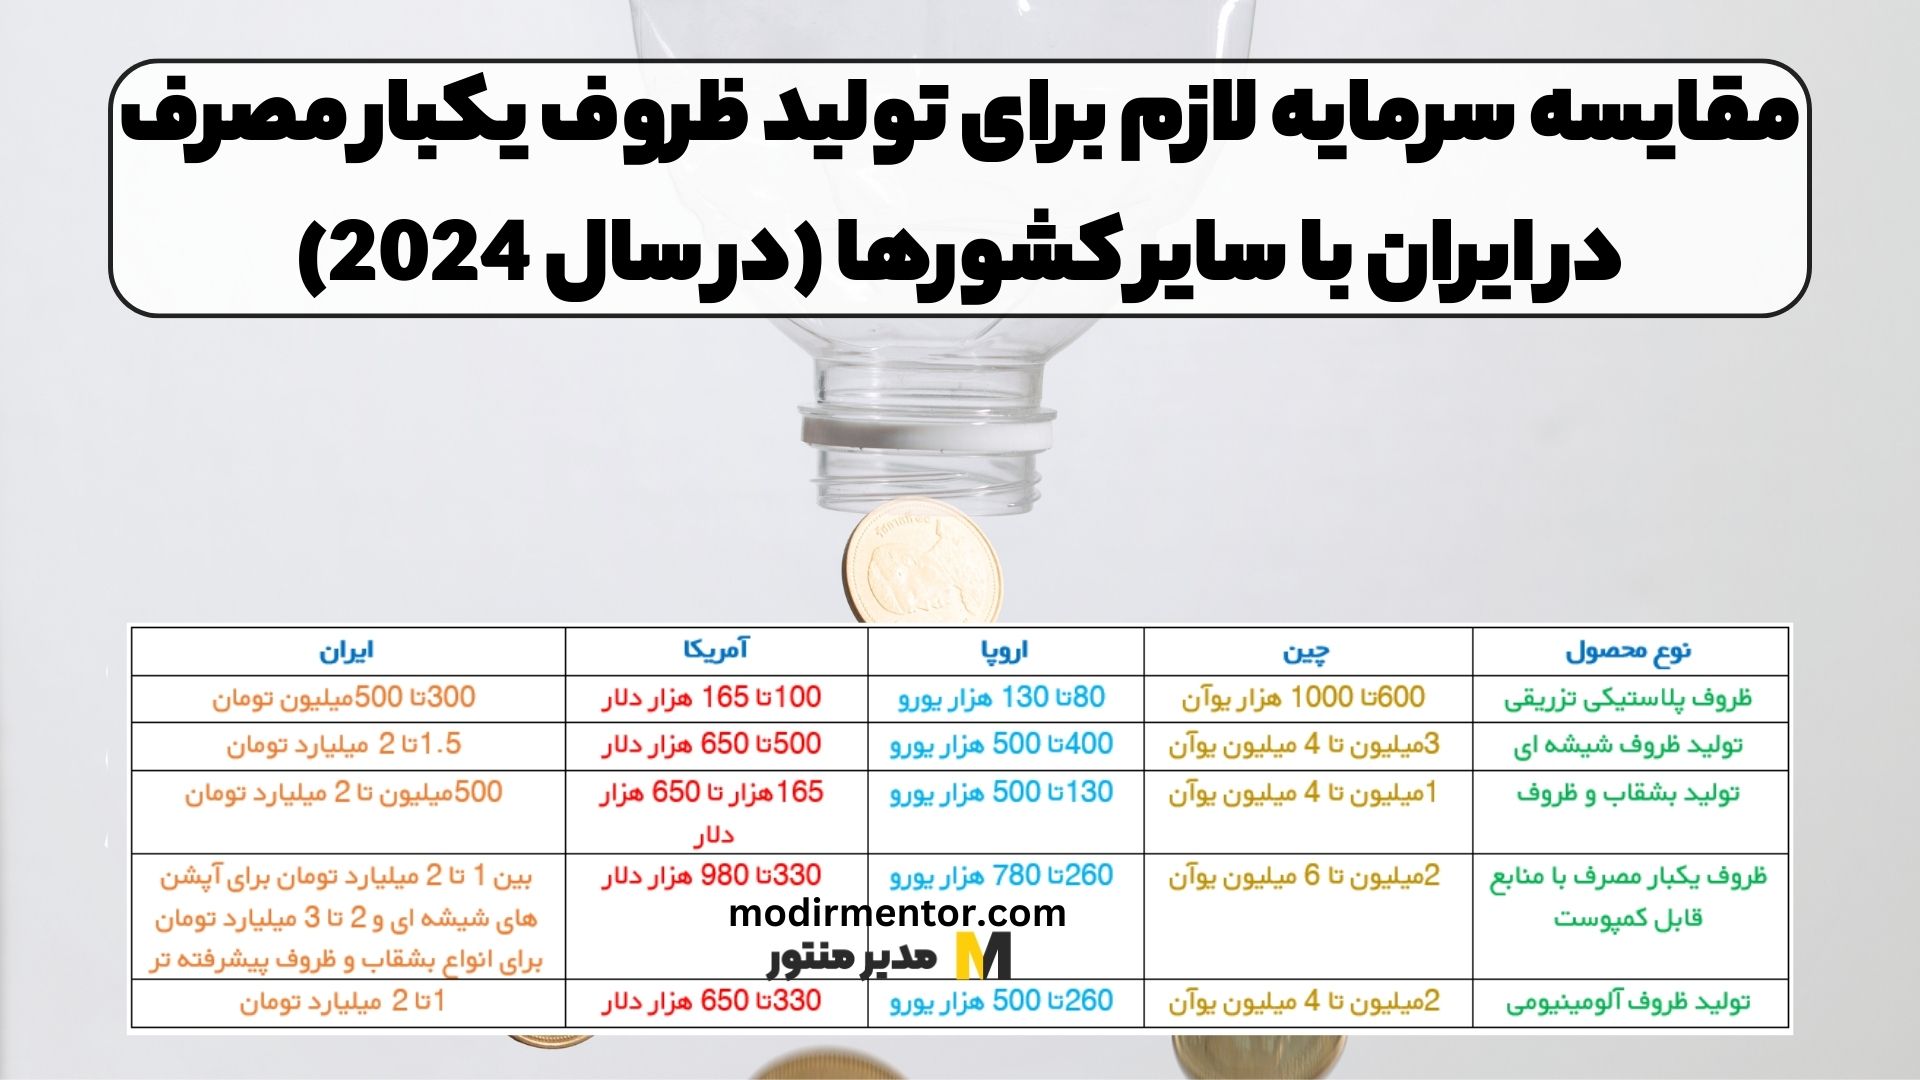 مقایسه سرمایه لازم برای تولید ظروف یکبار مصرف در ایران با سایر کشورها (در سال 2024)